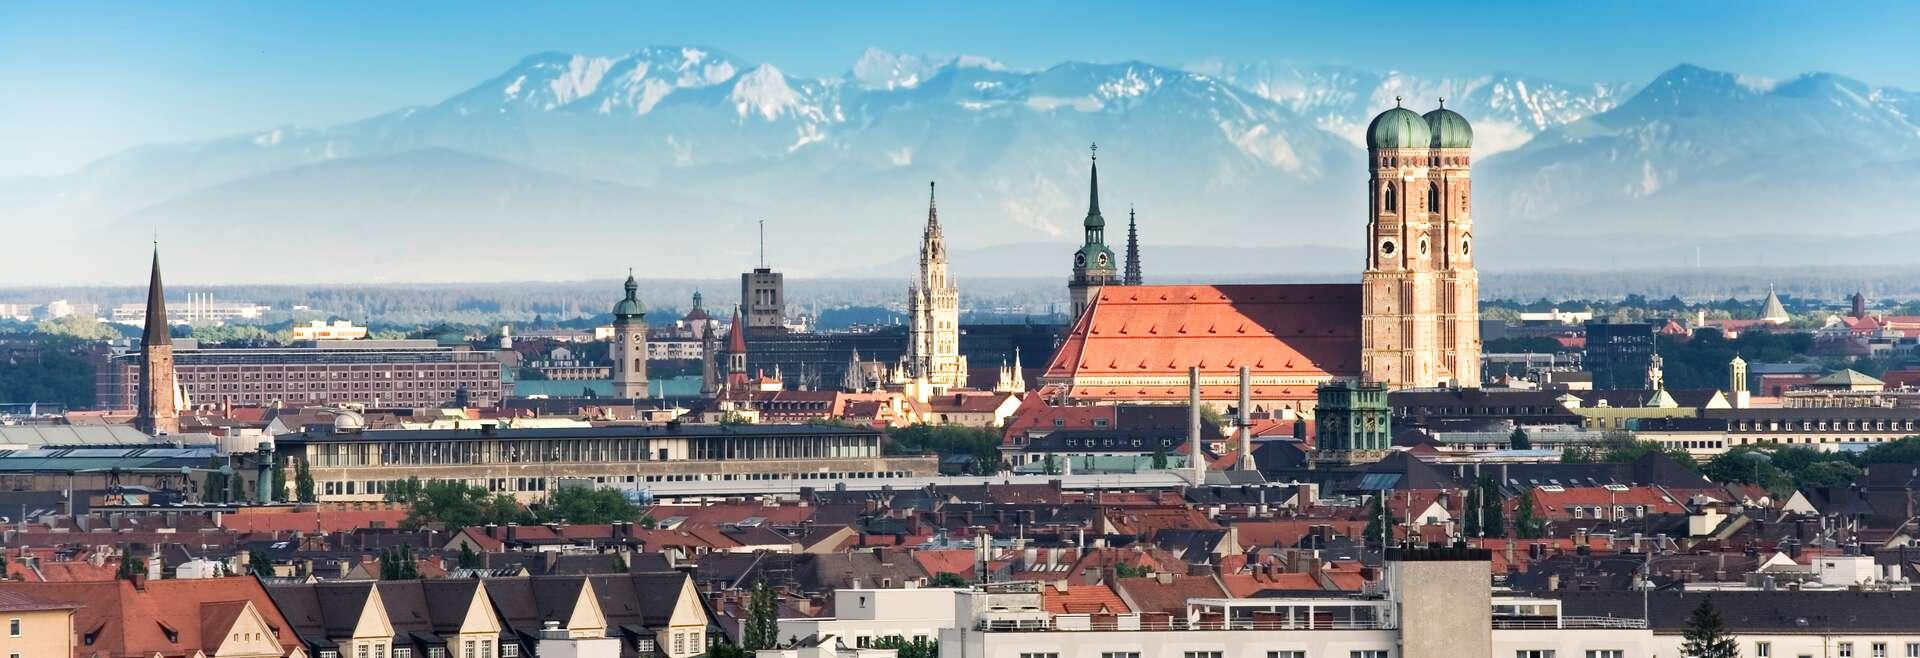 Sprachaufenthalt Deutschland, München - Panorama